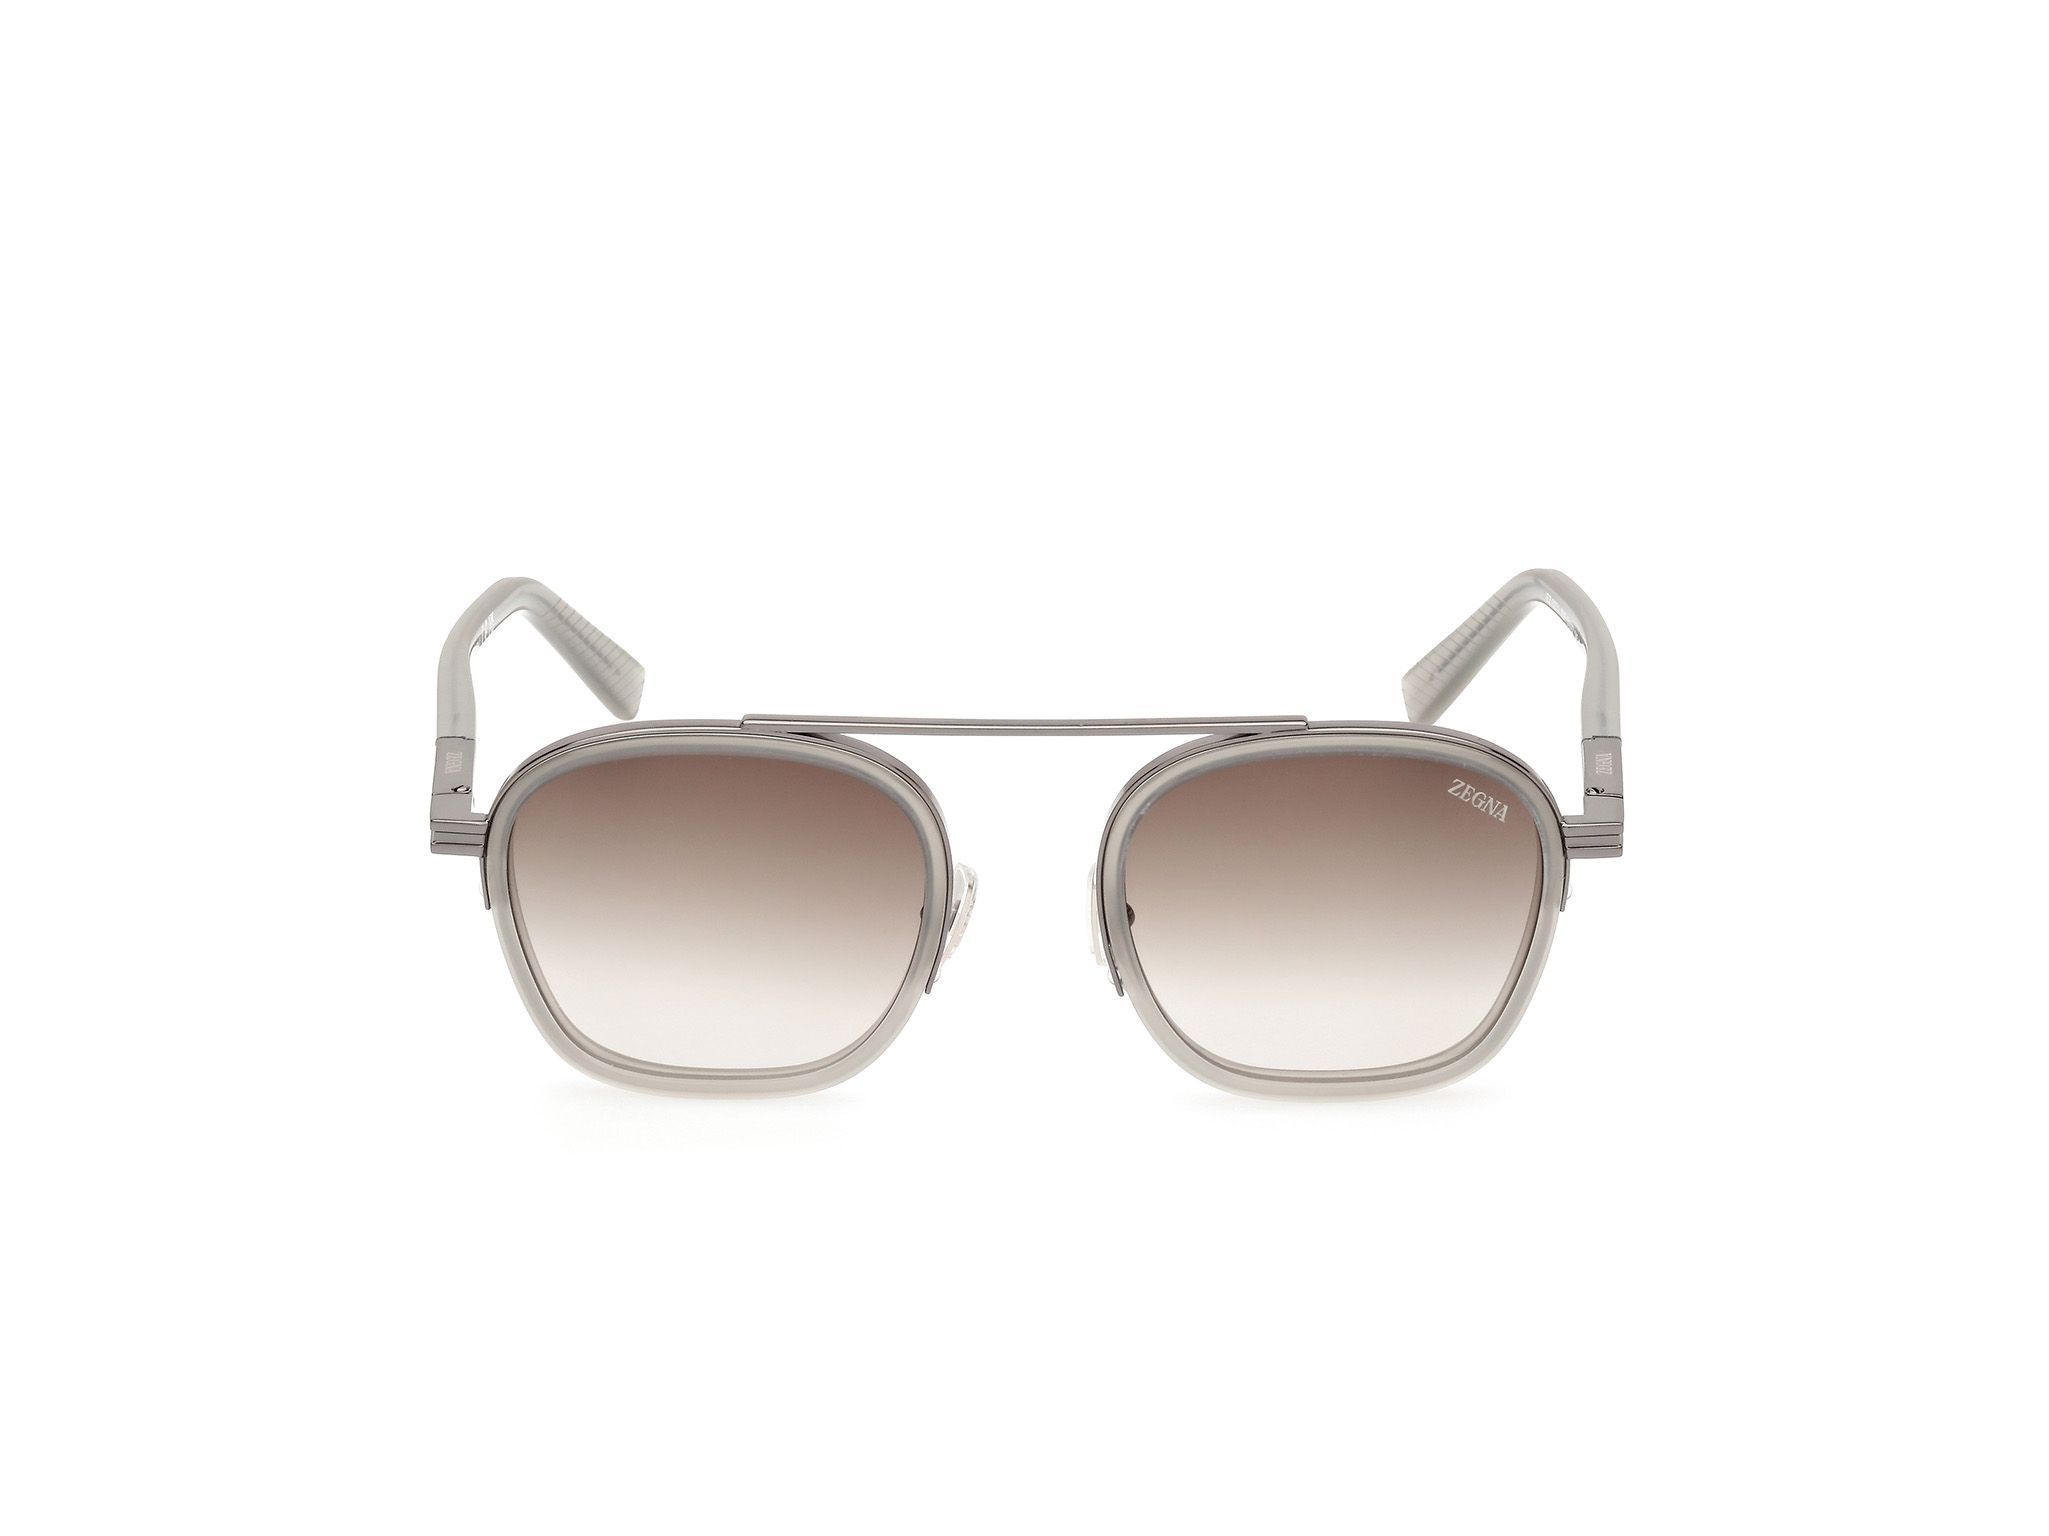 EZ0231 Geometric Sunglasses 20F - size 51